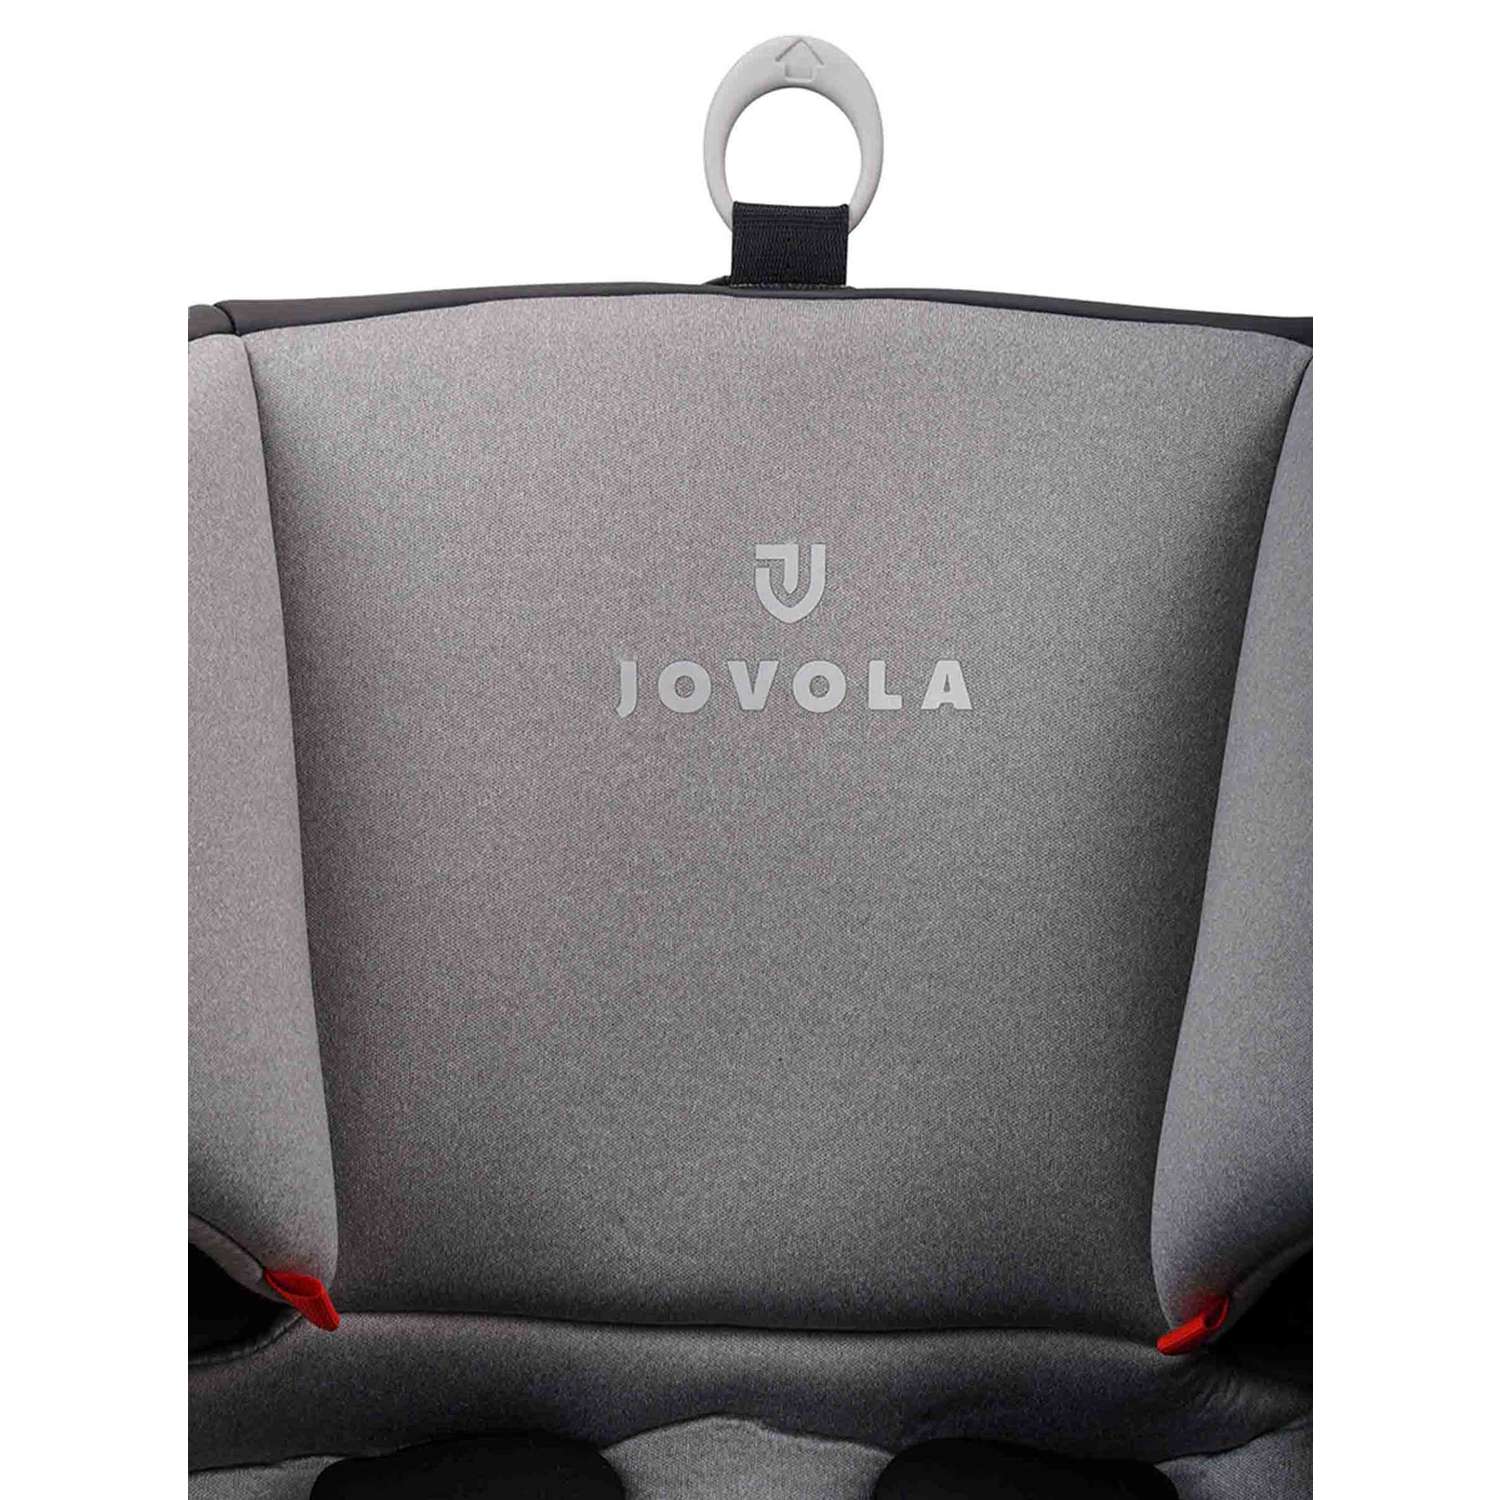 Автокресло JOVOLA I-TRAVEL ISOFIX группа 0+1+2+3 (0-36 кг) черный-св.серый - фото 24